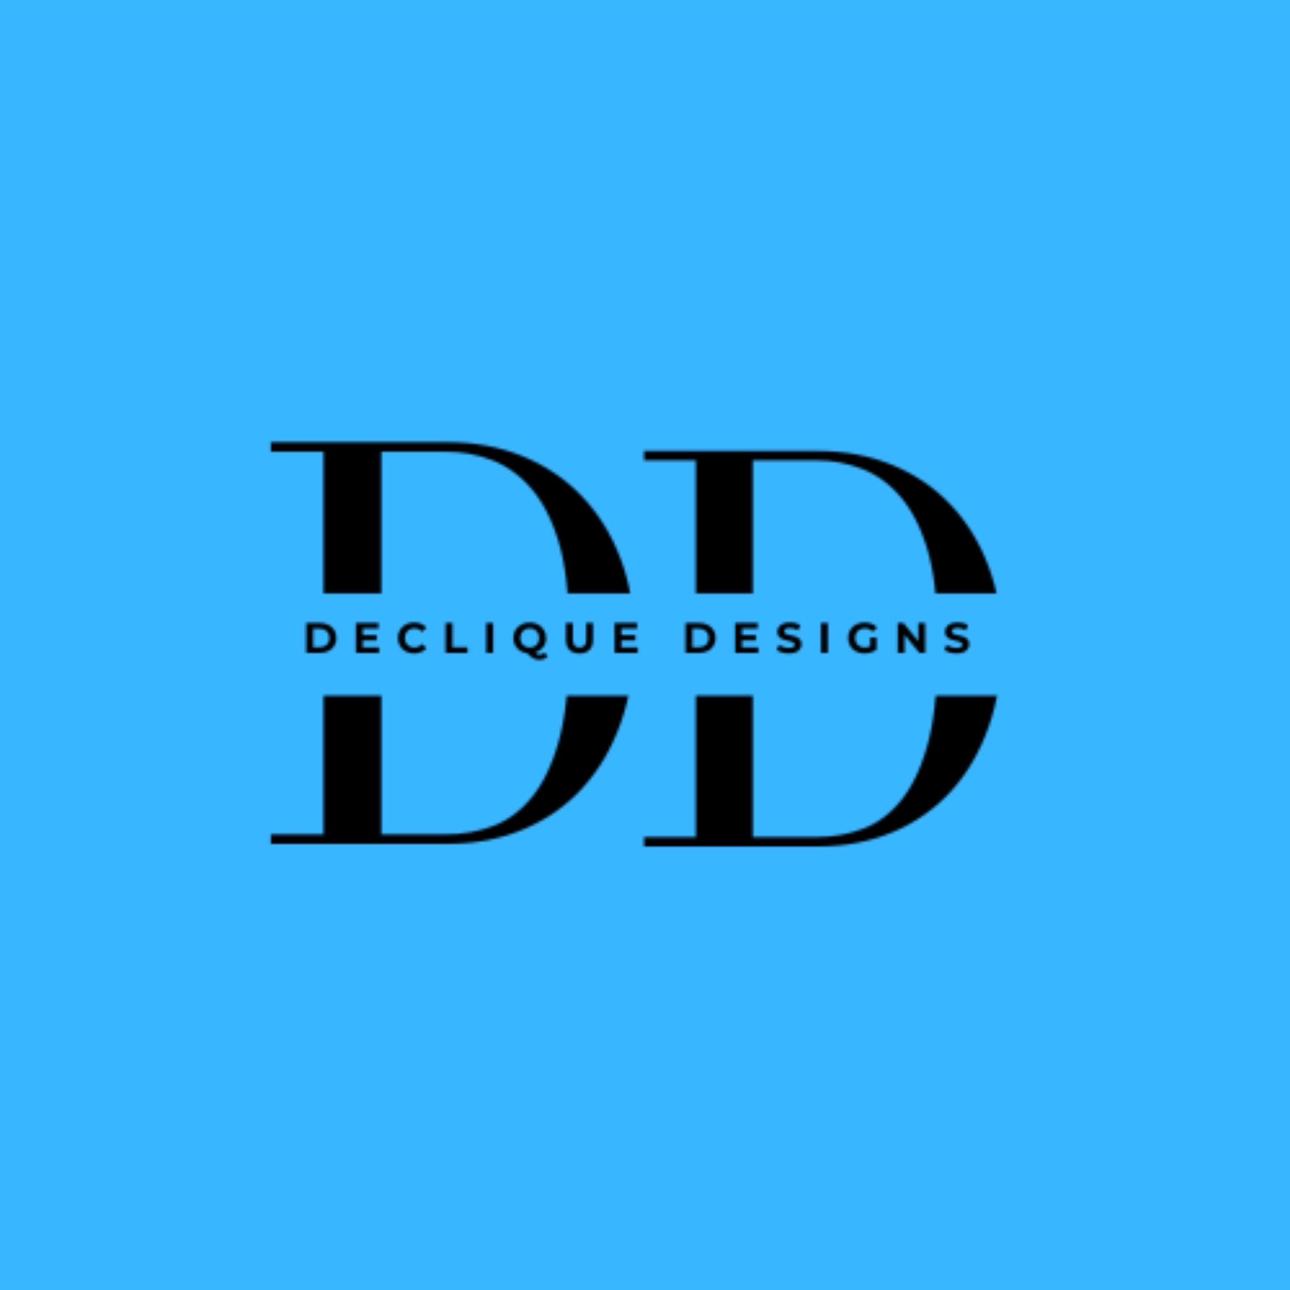 DecliqueDesigns's images